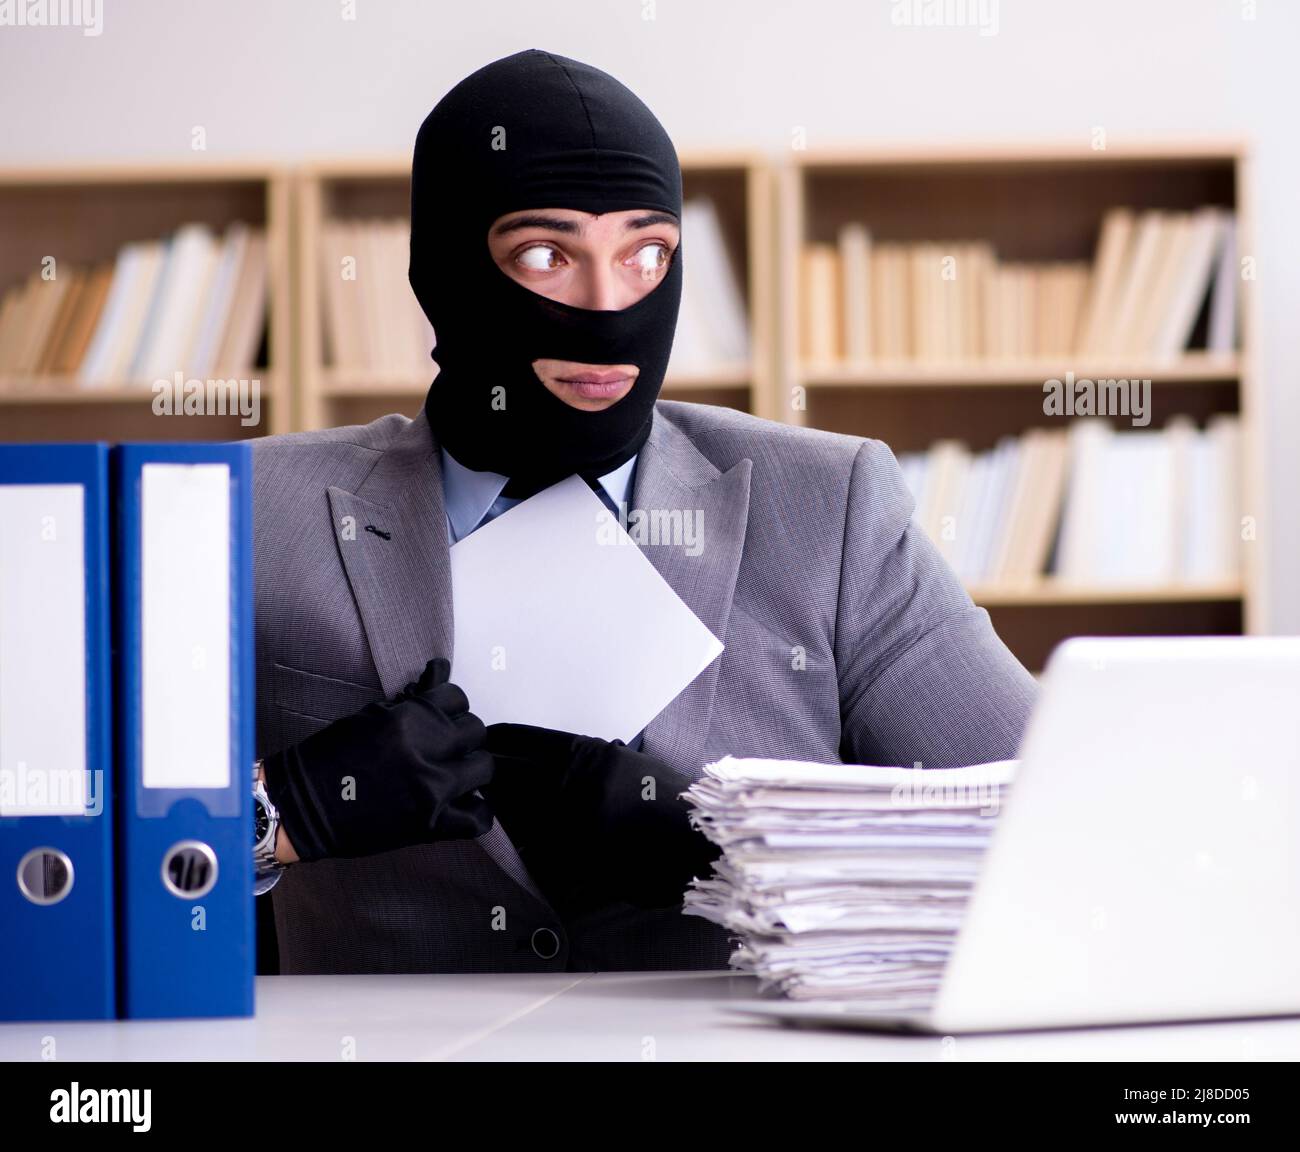 Immagini Stock - Uomo D'affari Criminale Con Balaclava In Ufficio. Image  77165576